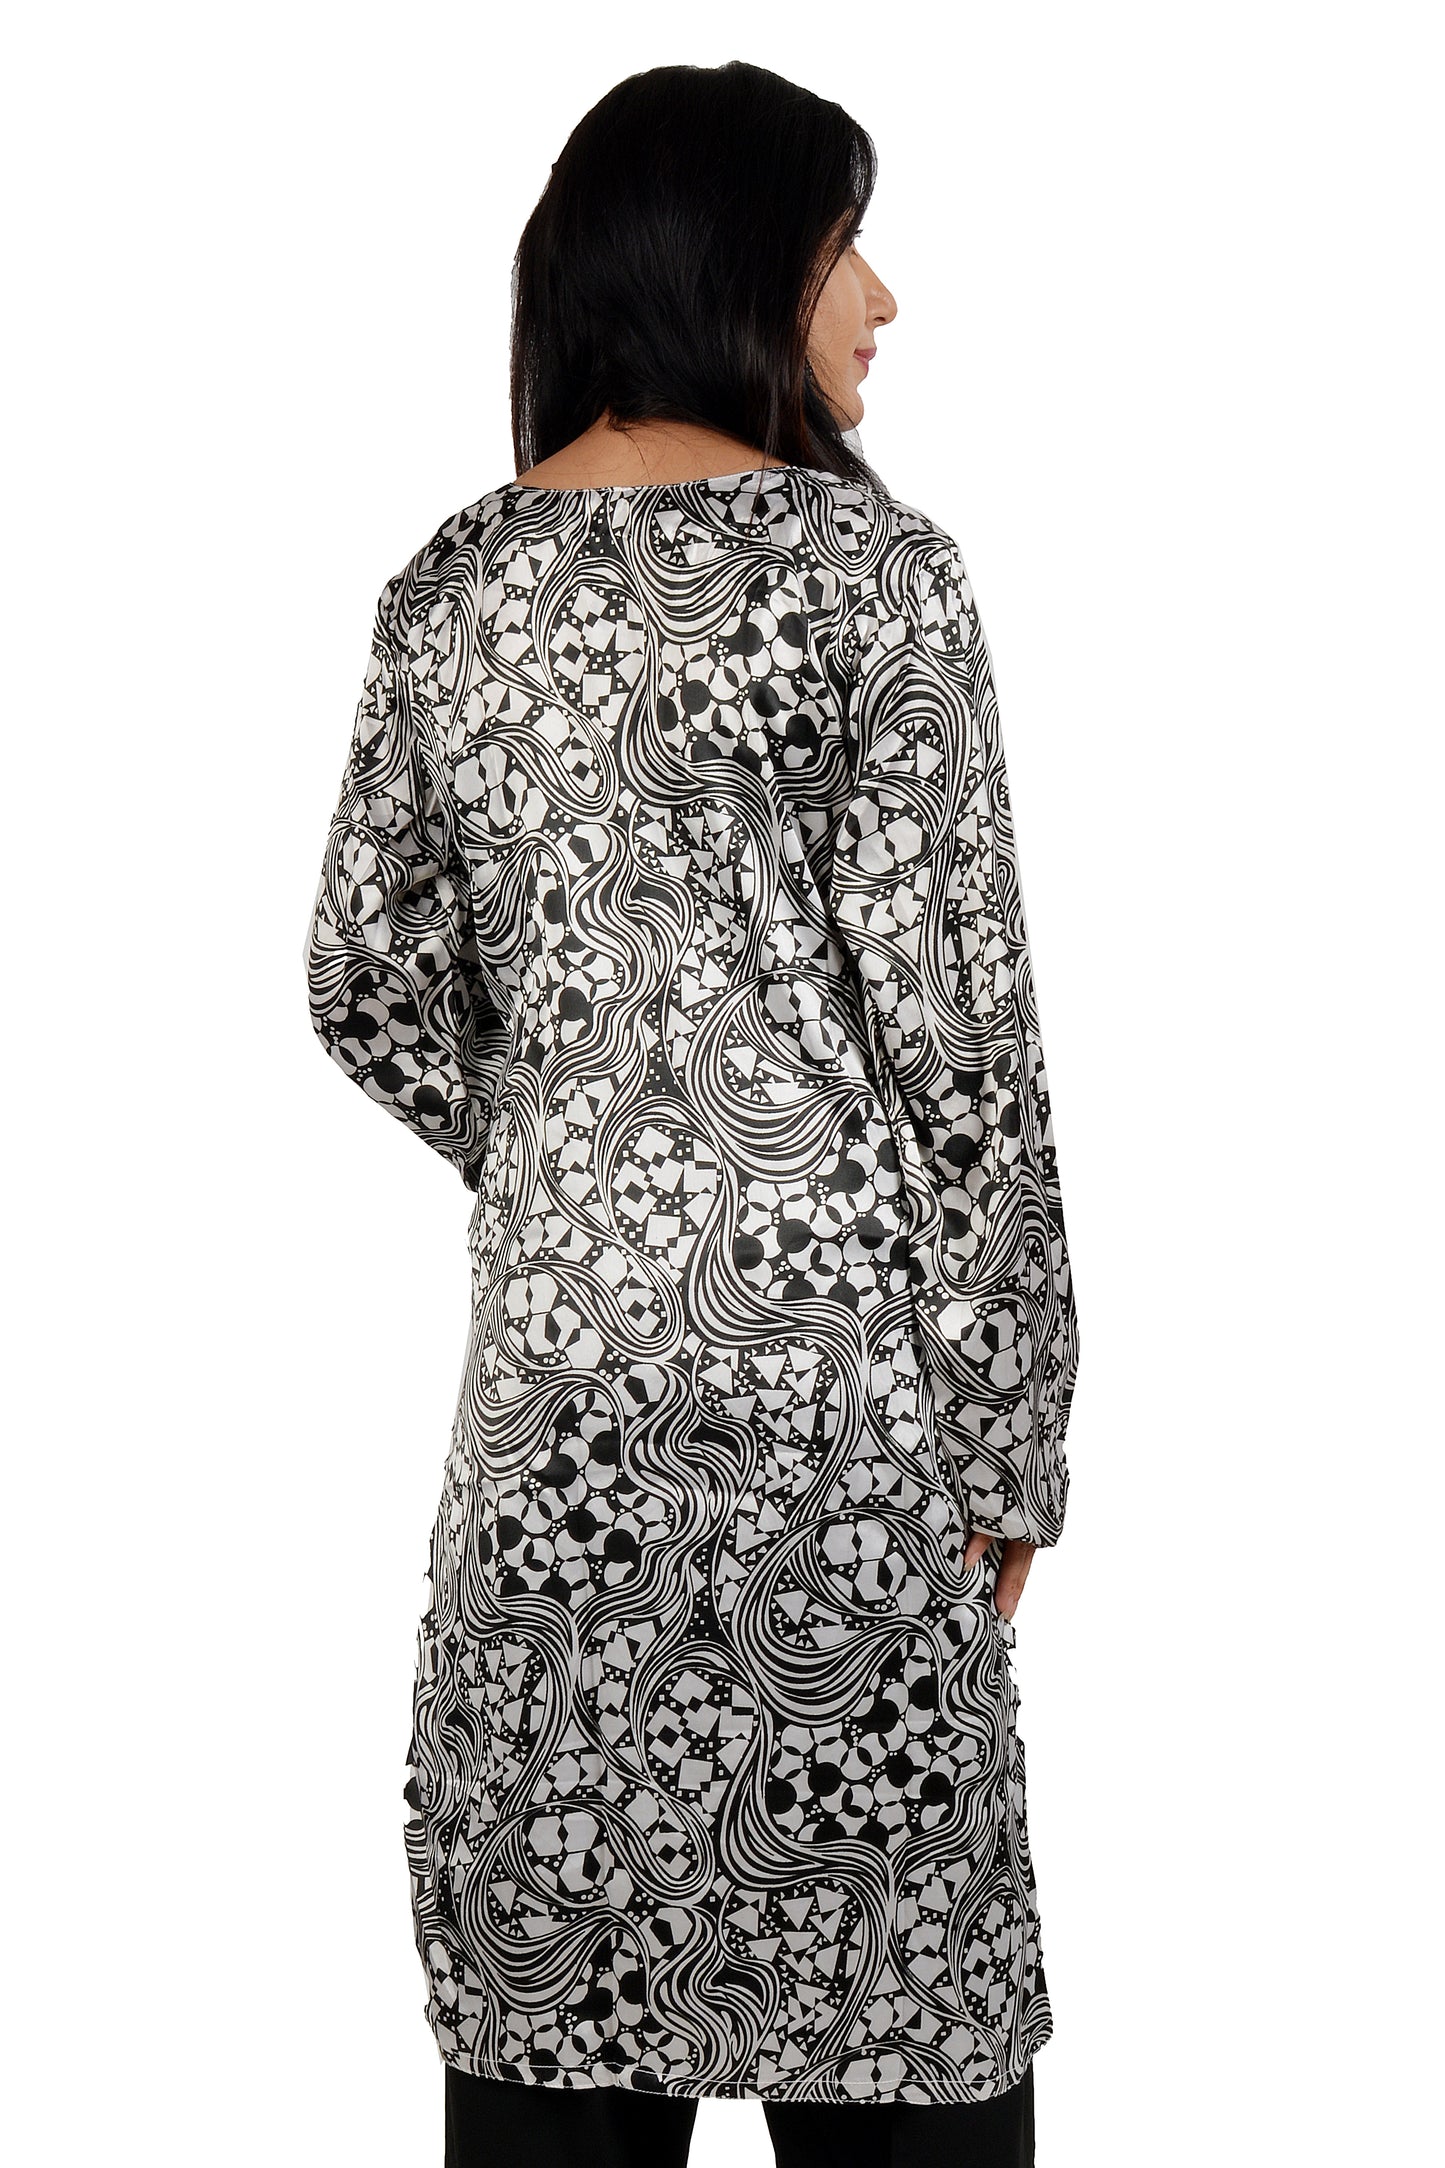 Black  Crepe  Dress Salwar kameez Dress  Chest Size 42